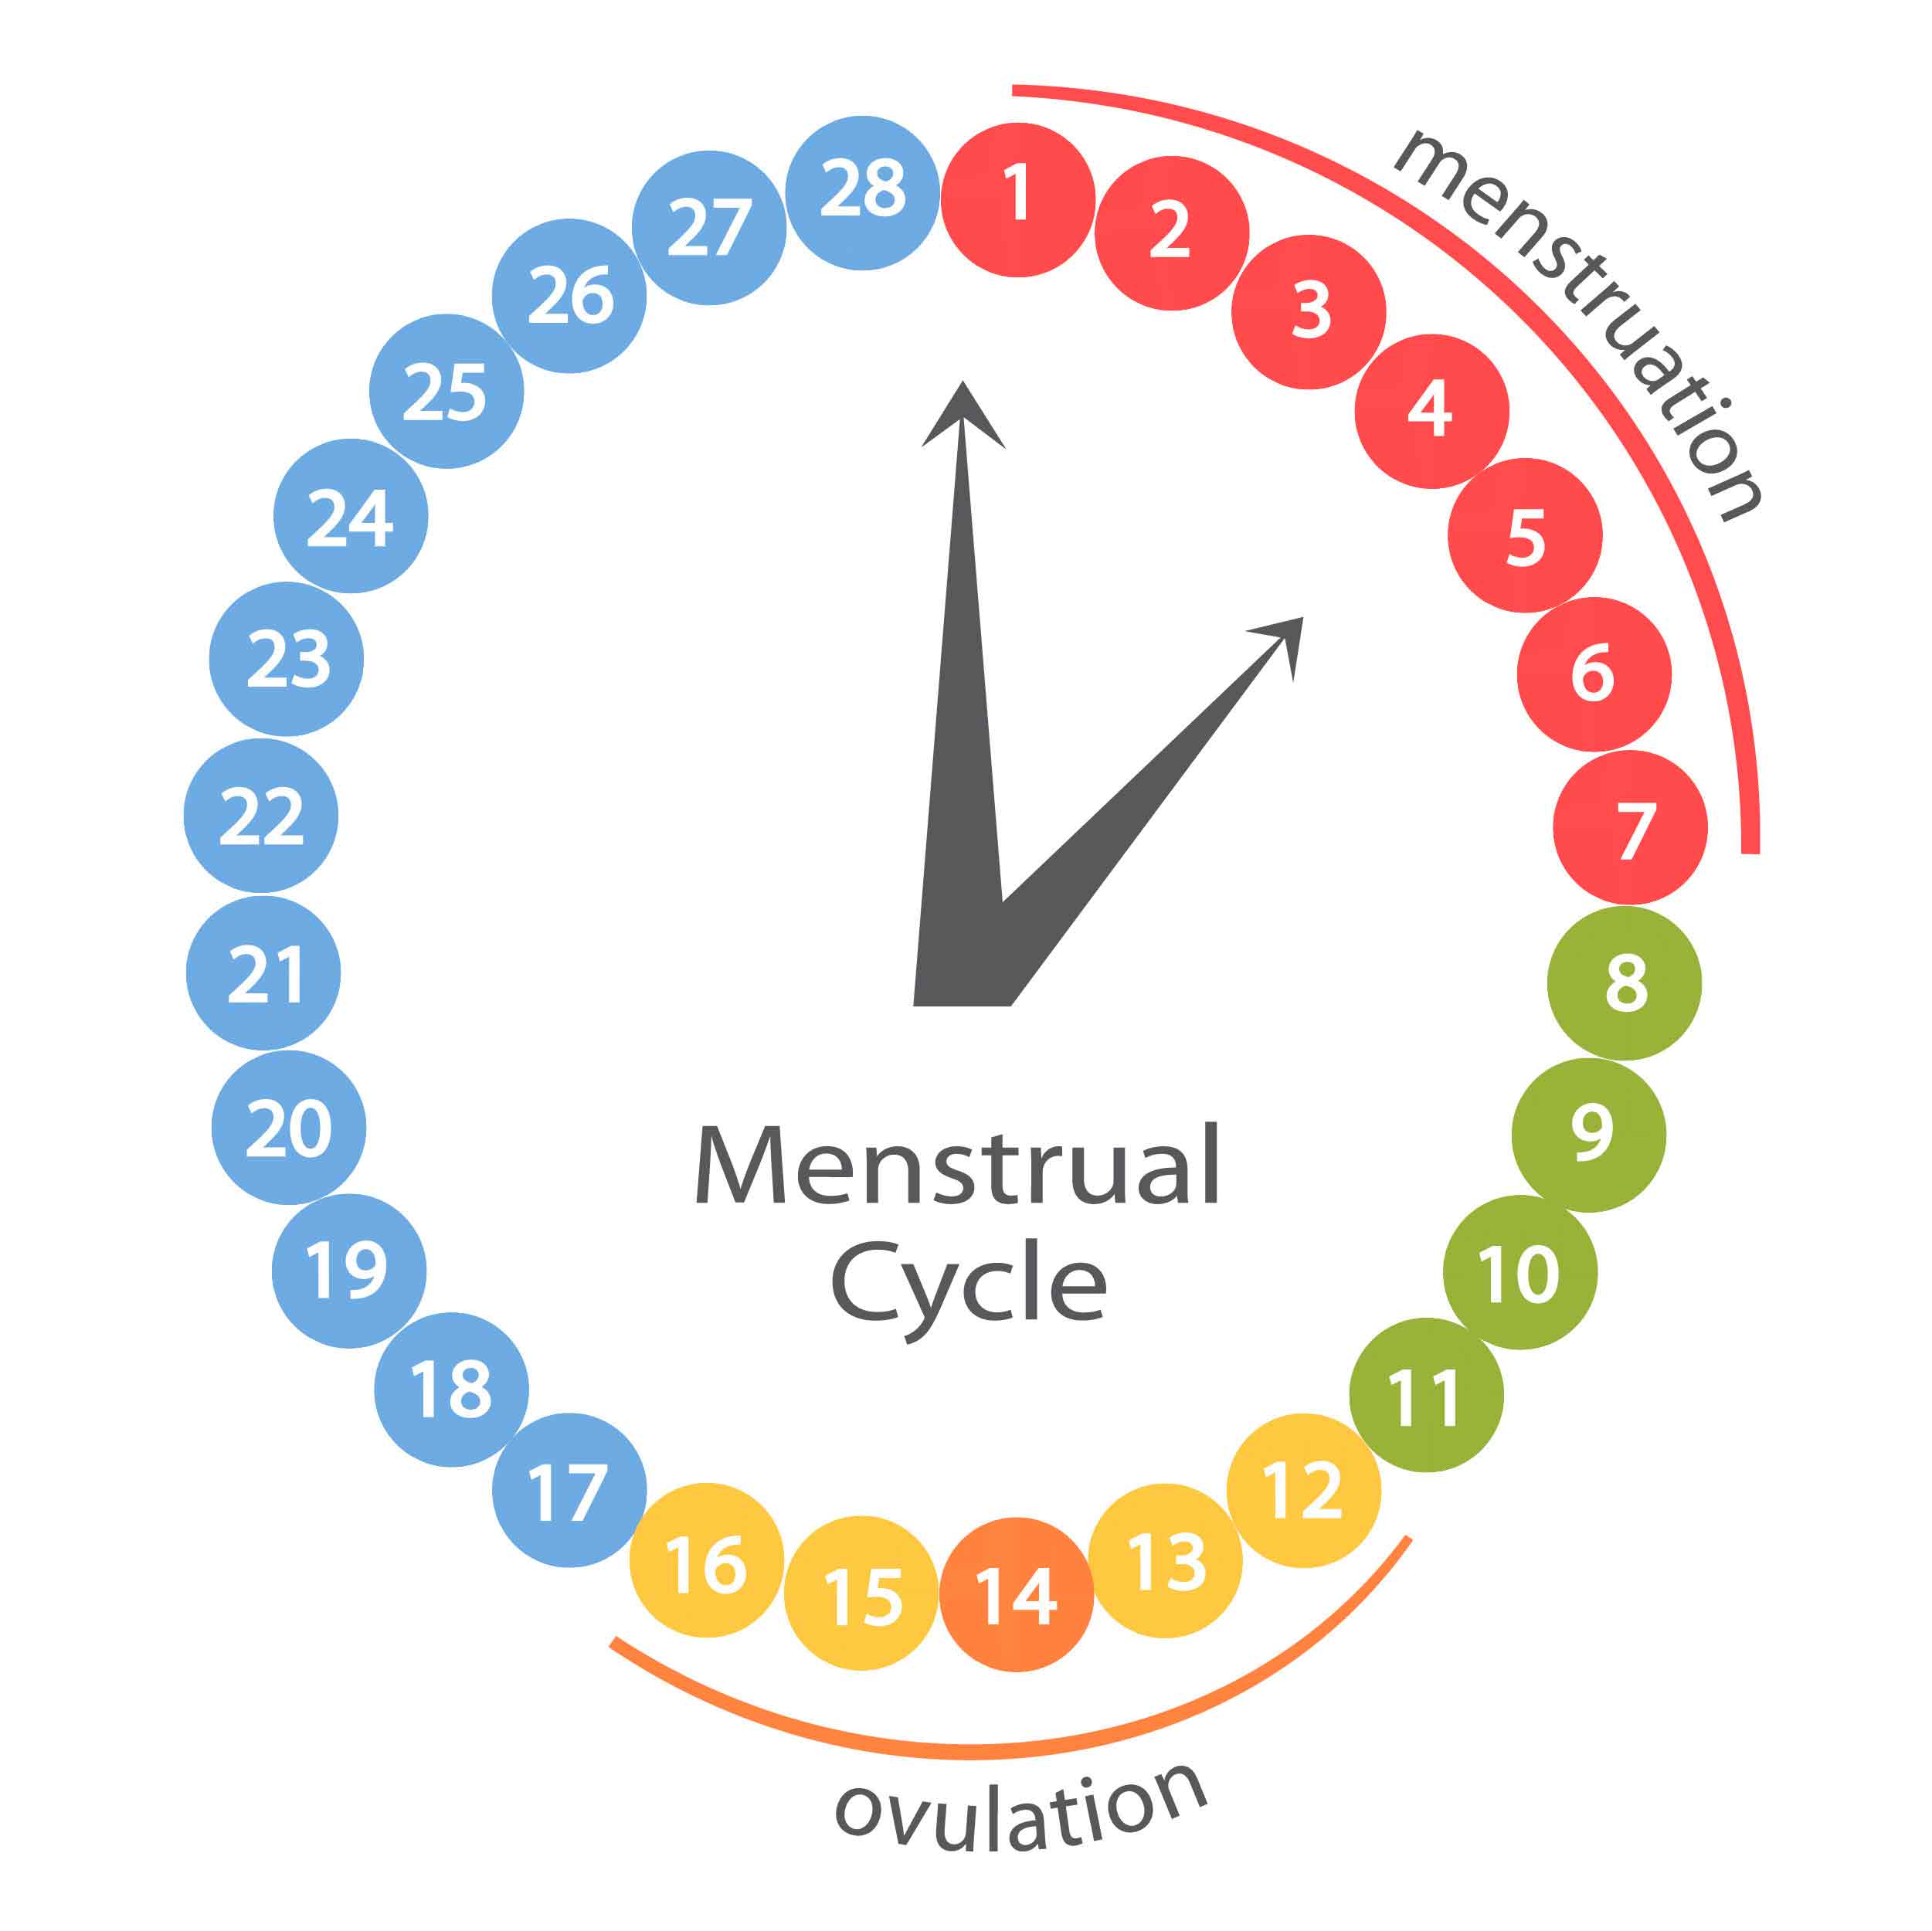 Первый день после месячных можно ли забеременеть. Менструальный цикл. Менструальныменструальный Уикд. Циклцикл менструальный. Цикл менструационного цикла.